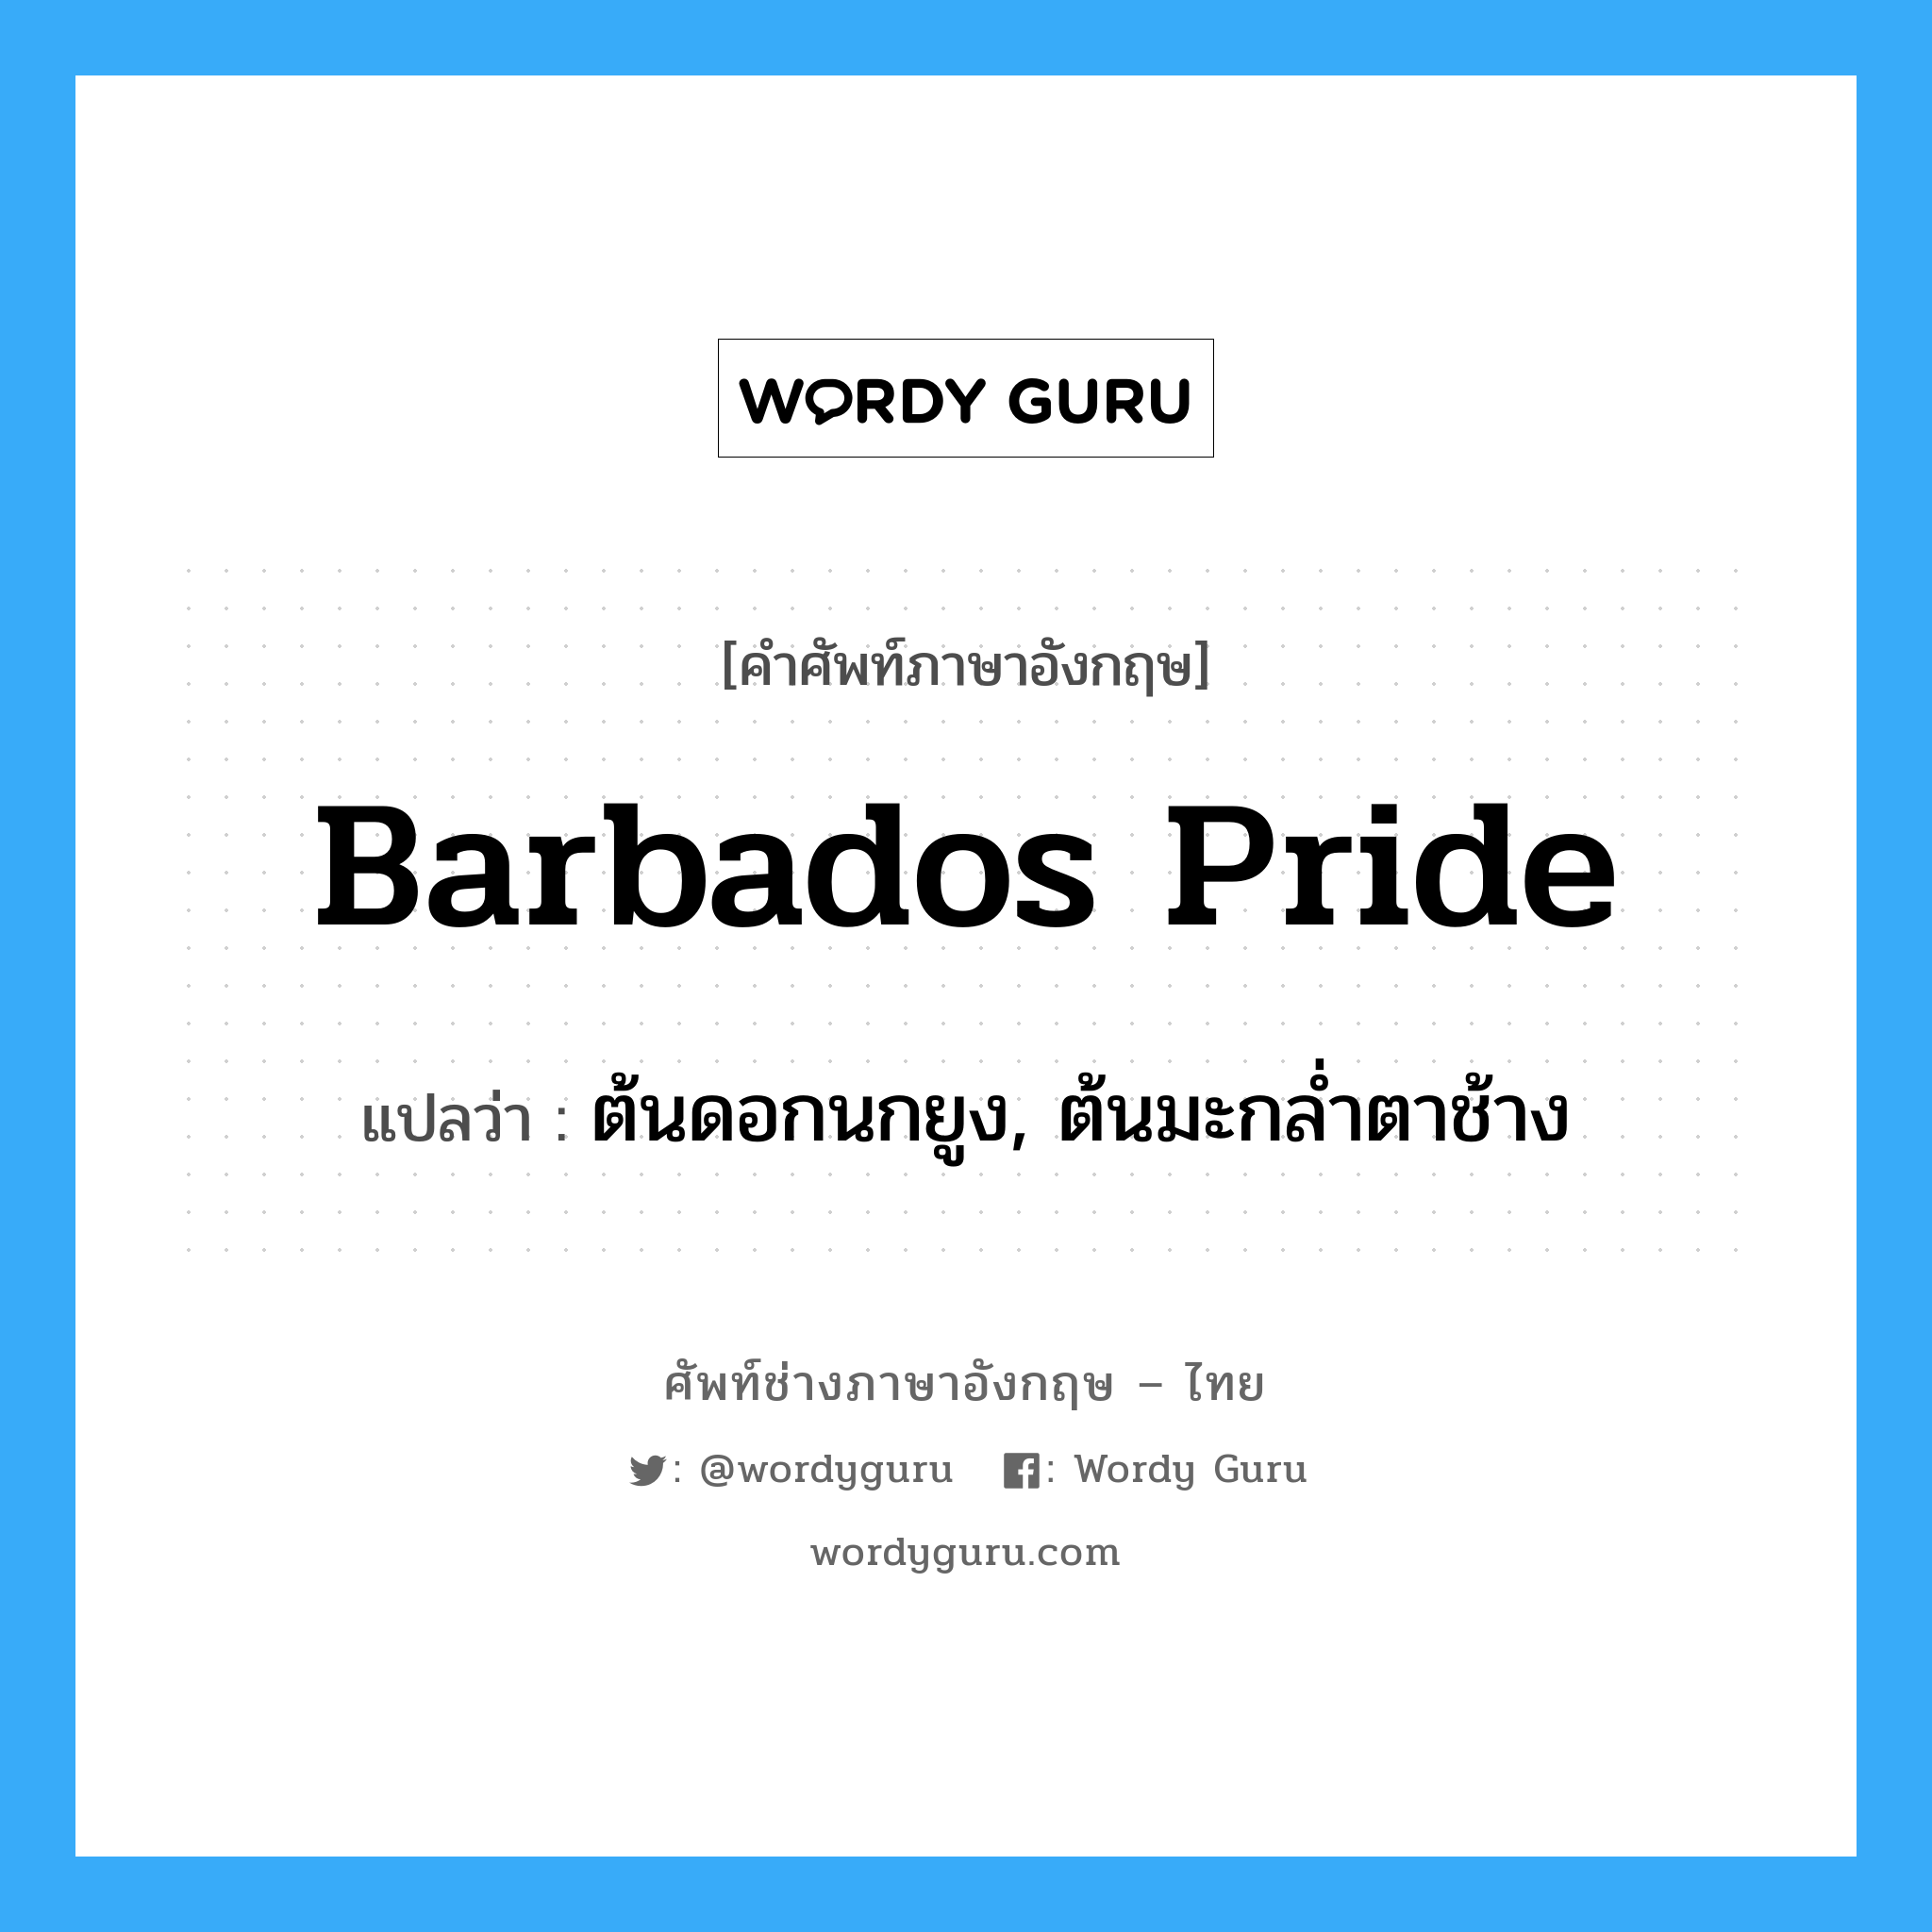 barbados pride แปลว่า?, คำศัพท์ช่างภาษาอังกฤษ - ไทย barbados pride คำศัพท์ภาษาอังกฤษ barbados pride แปลว่า ต้นดอกนกยูง, ต้นมะกล่ำตาช้าง